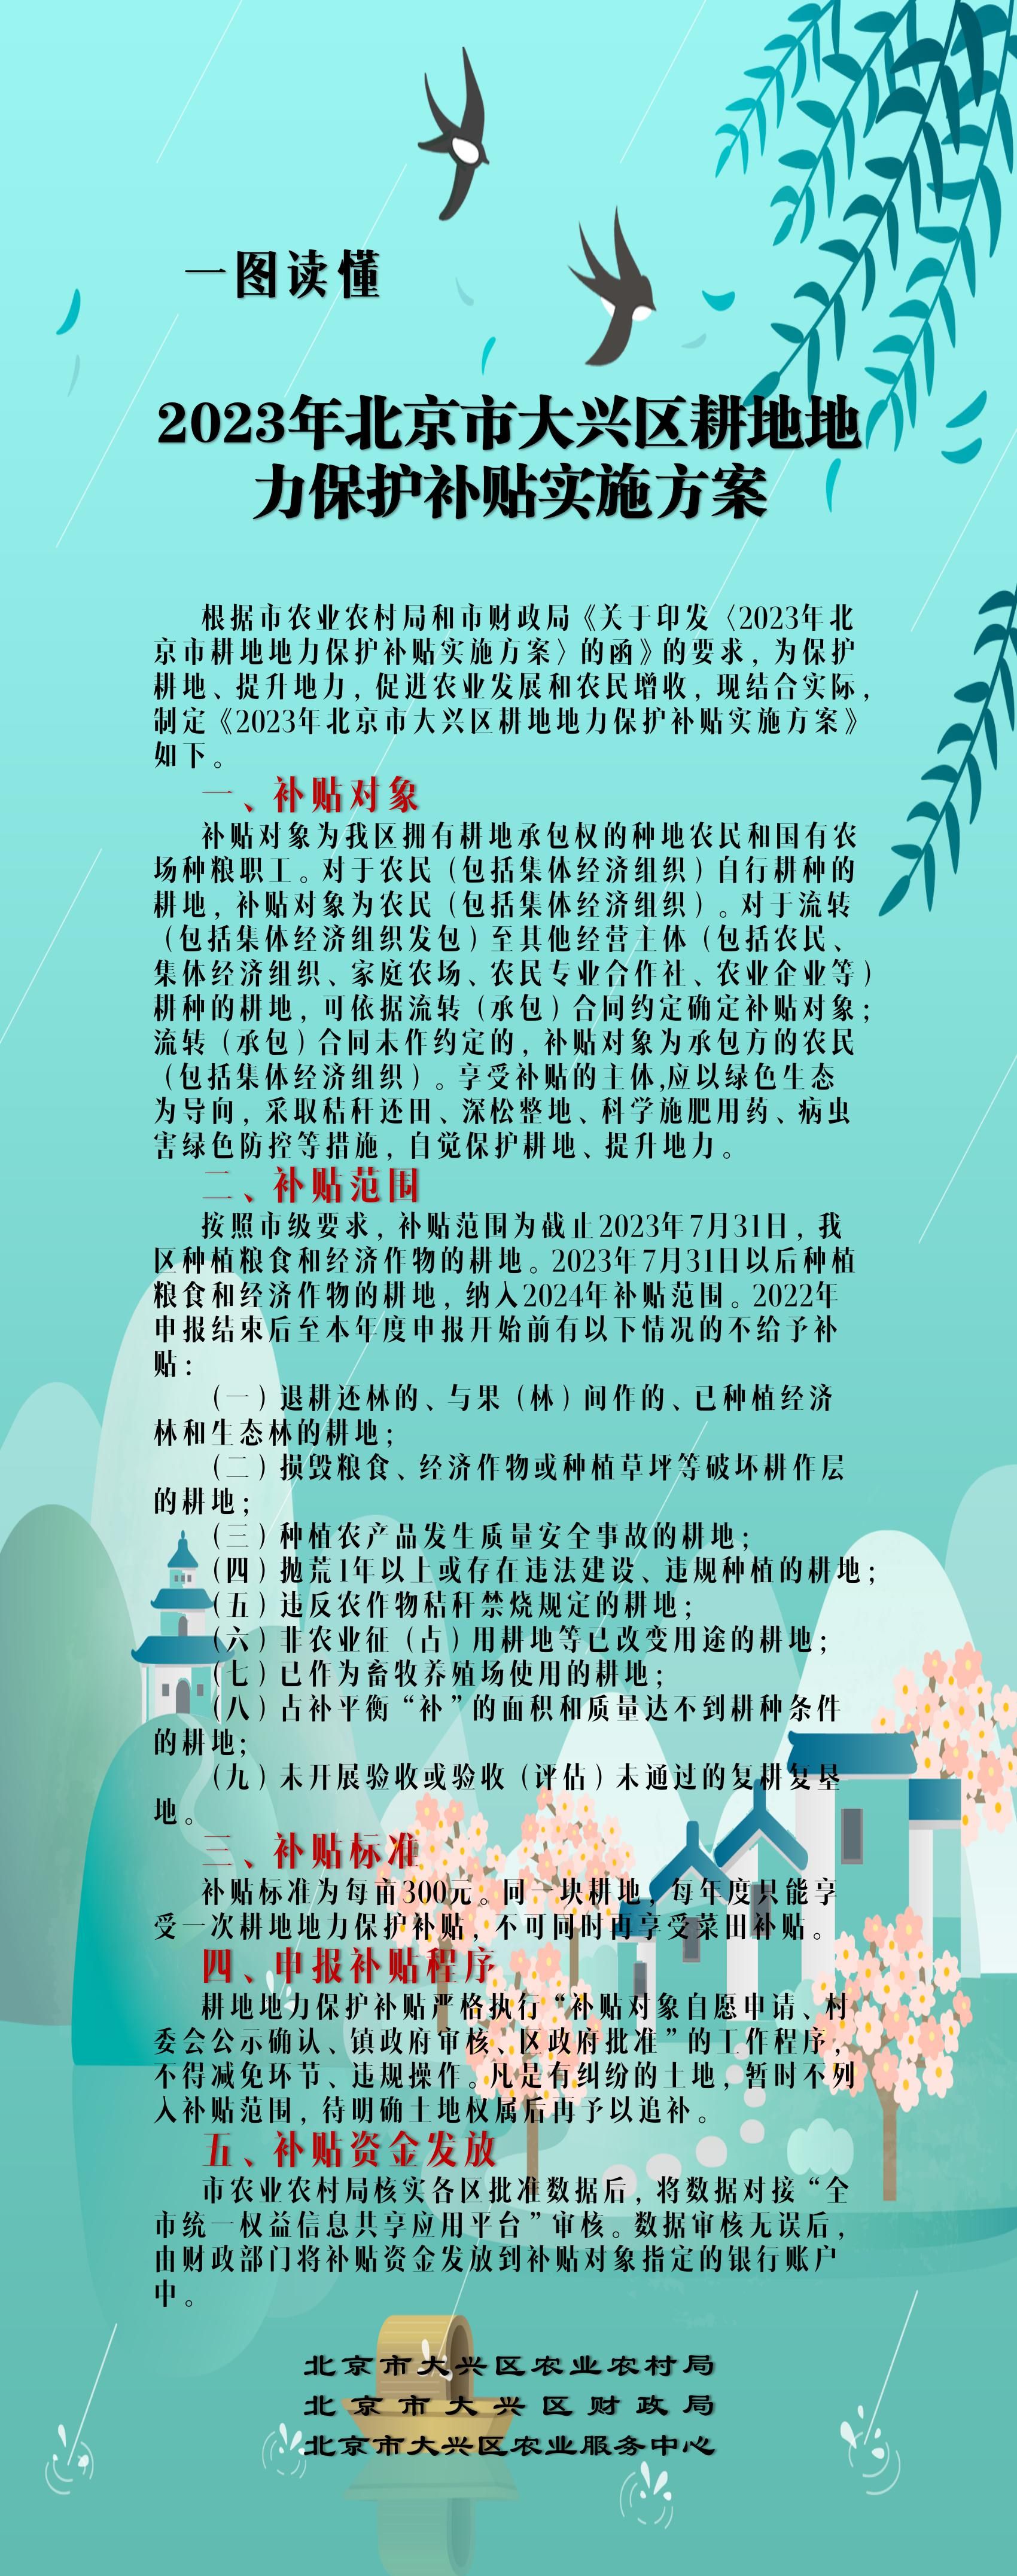 2023年北京市大兴区耕地地力保护补贴实施方案